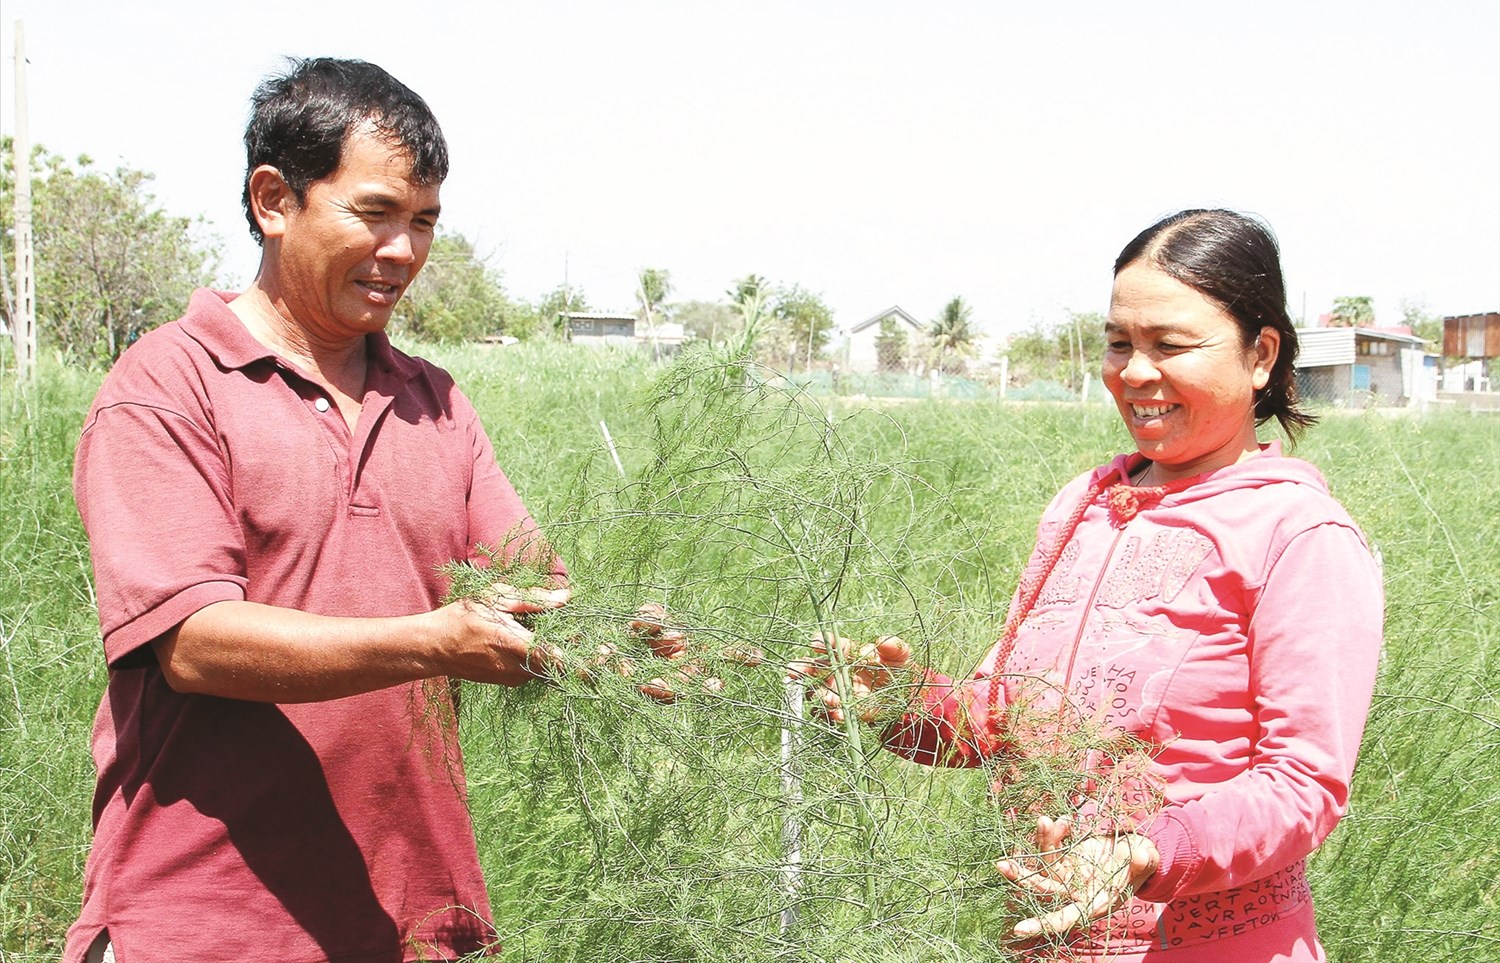 Nông dân làng Chăm Tuấn Tú trồng cây măng tây xanh đạt tiêu chuẩn VietGAP